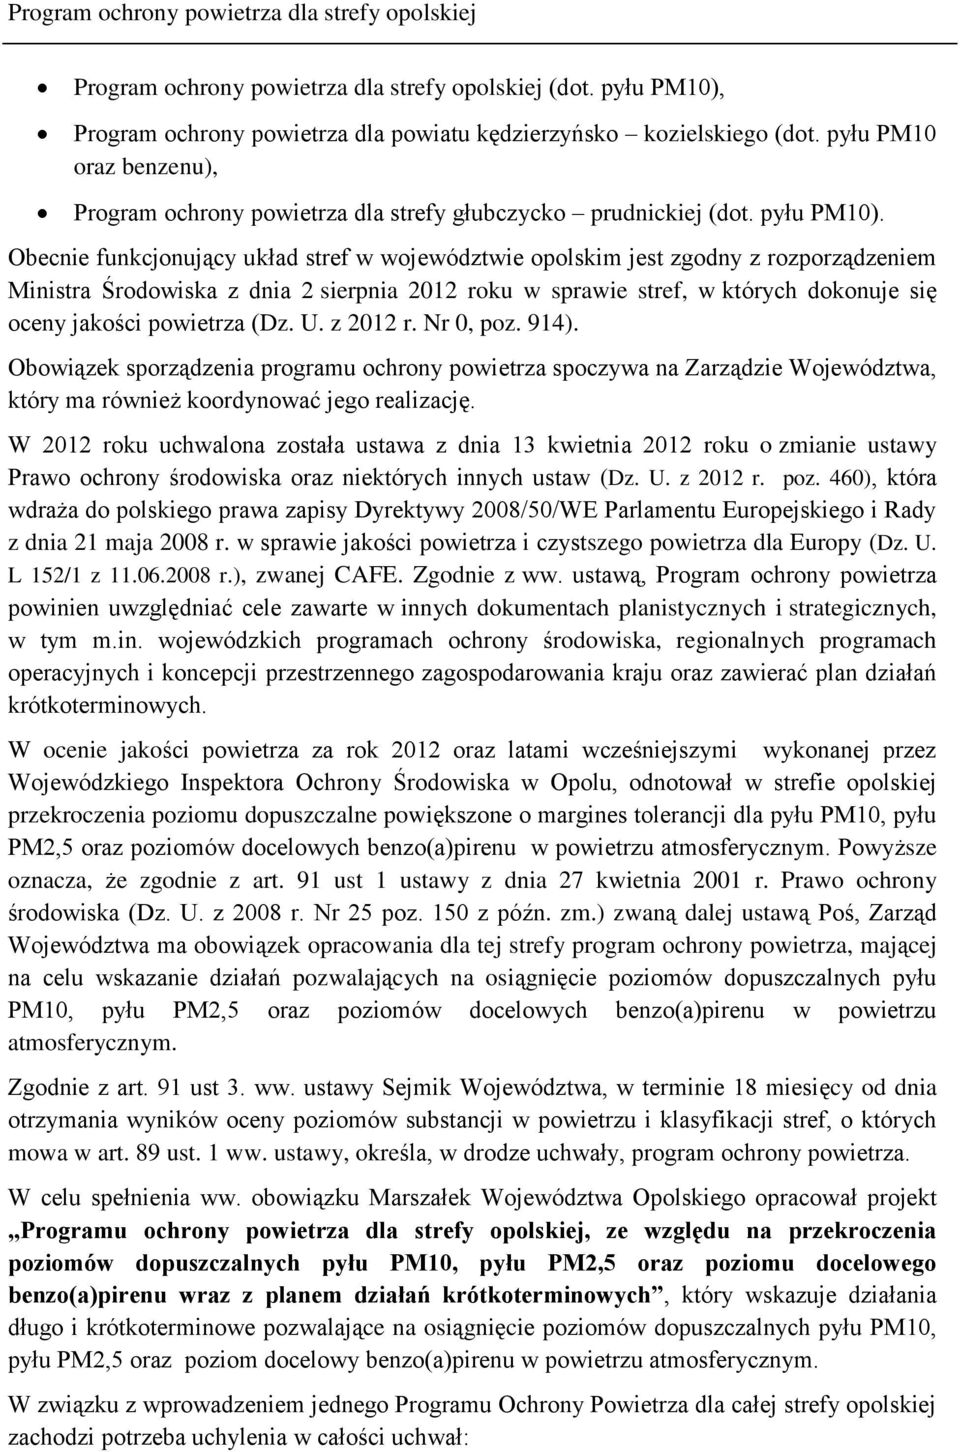 Obecnie funkcjonujący układ stref w województwie opolskim jest zgodny z rozporządzeniem Ministra Środowiska z dnia 2 sierpnia 2012 roku w sprawie stref, w których dokonuje się oceny jakości powietrza